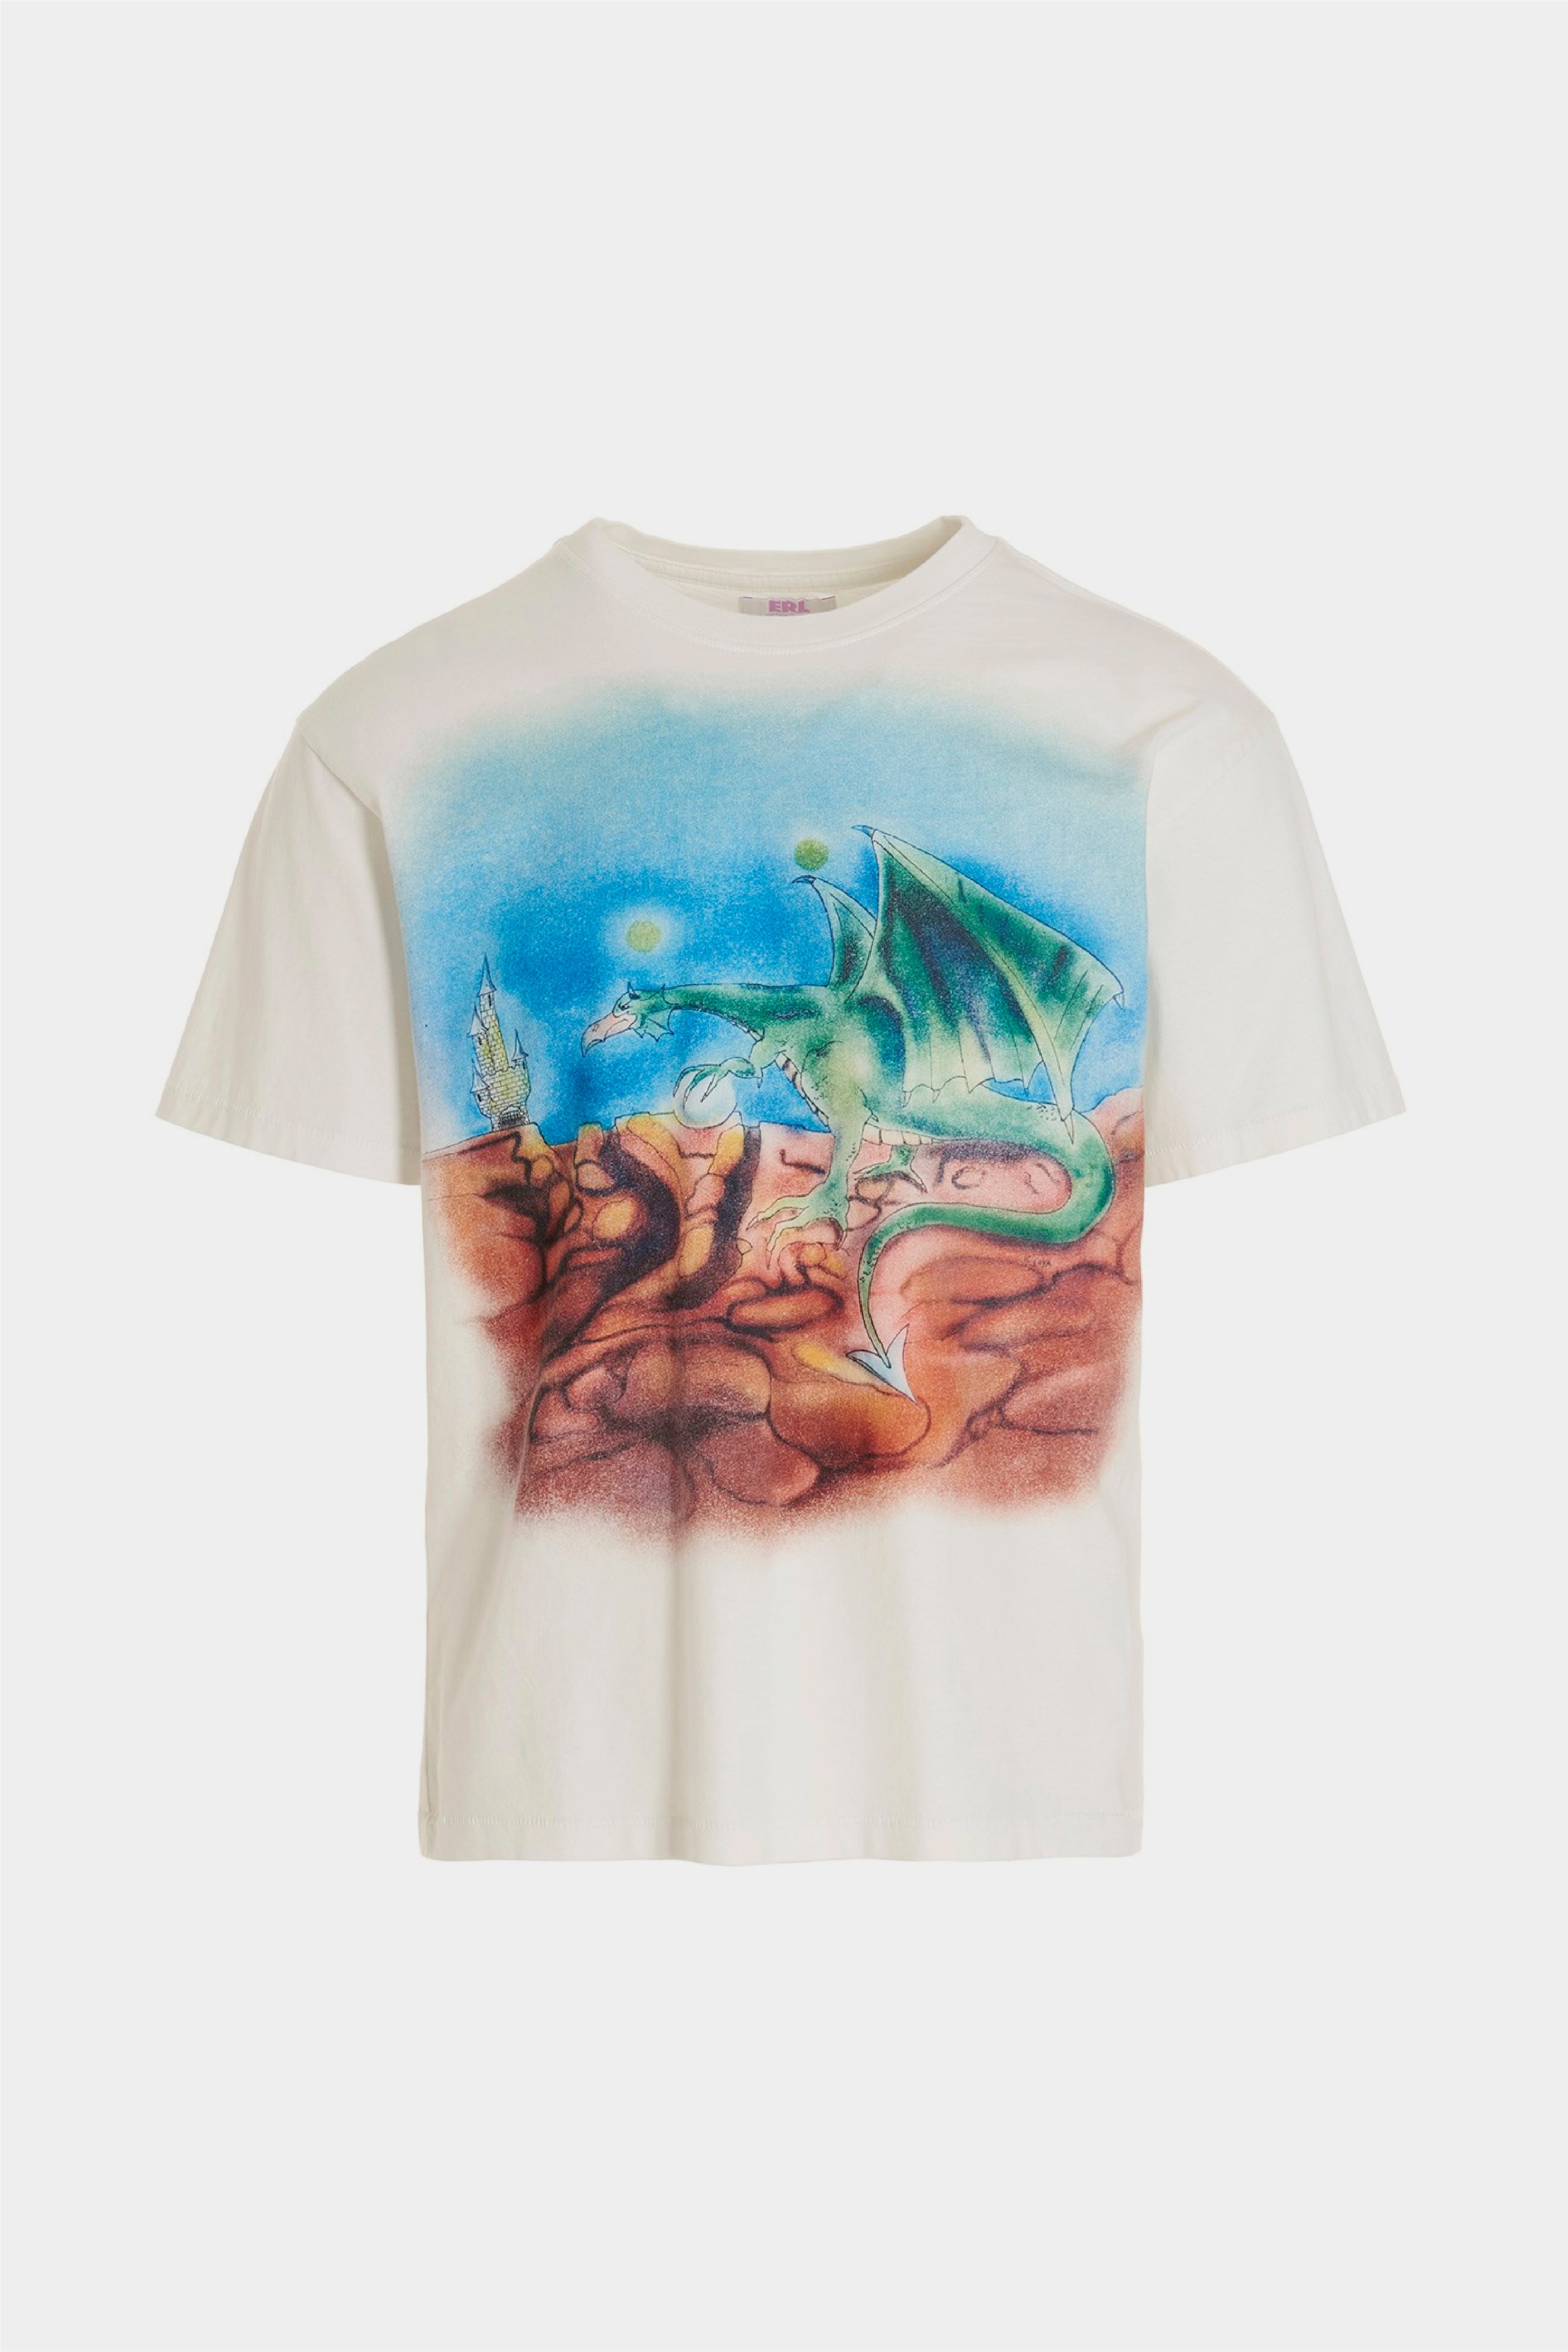 Selectshop FRAME - ERL Kids Graphic Print T-Shirt T-Shirts Concept Store Dubai